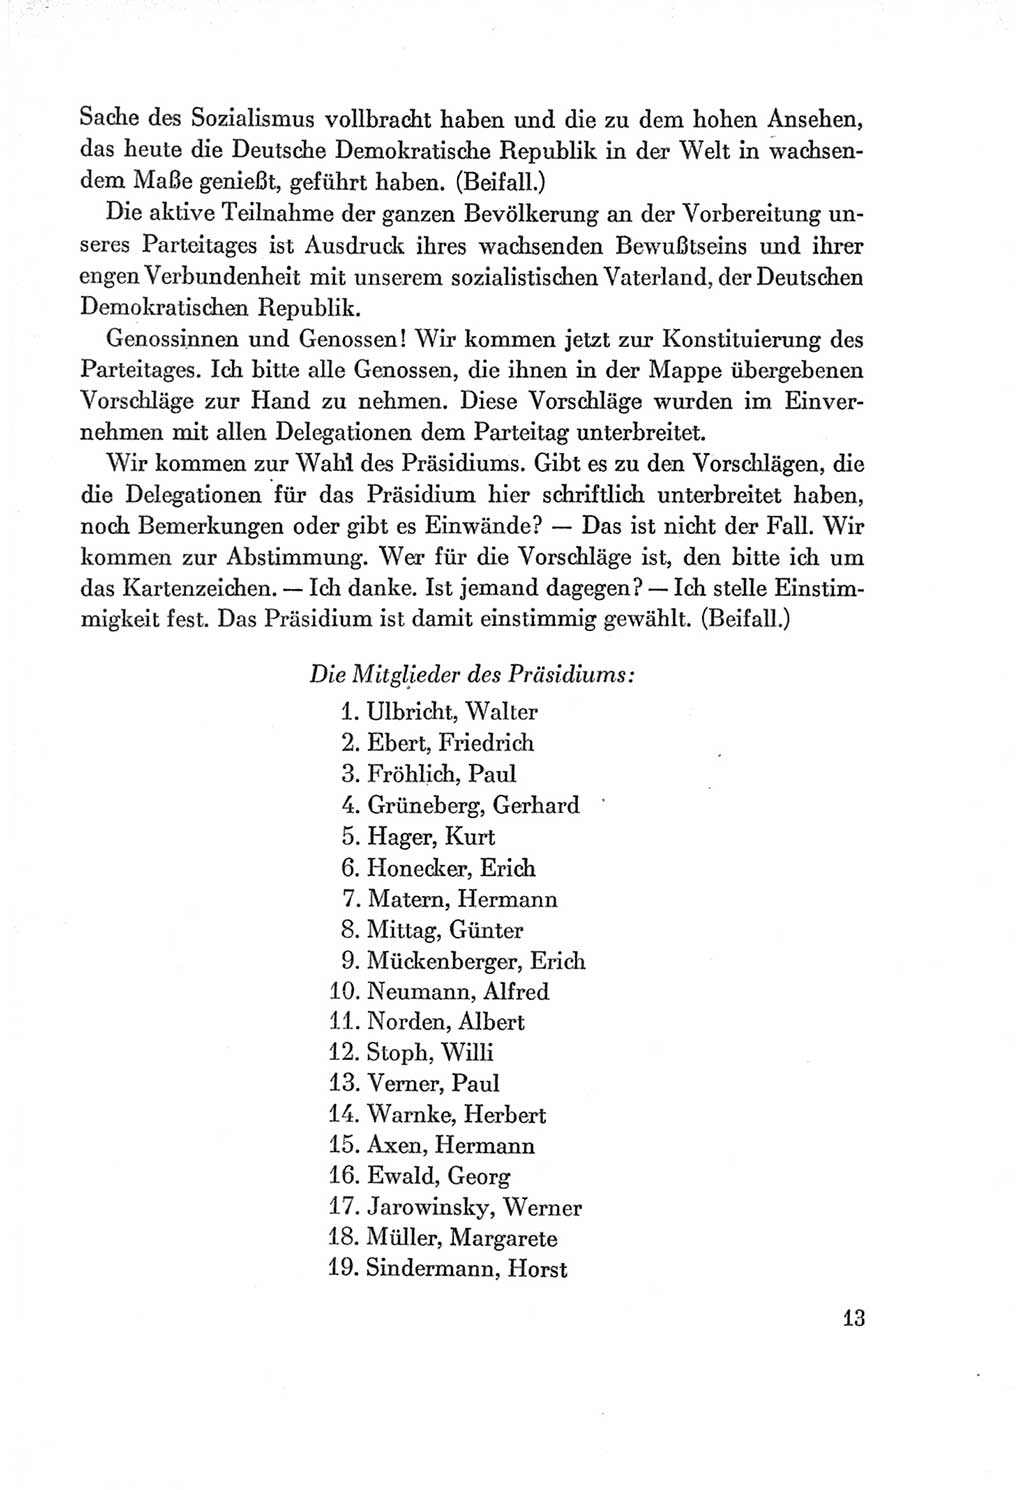 Protokoll der Verhandlungen des Ⅶ. Parteitages der Sozialistischen Einheitspartei Deutschlands (SED) [Deutsche Demokratische Republik (DDR)] 1967, Band Ⅰ, Seite 13 (Prot. Verh. Ⅶ. PT SED DDR 1967, Bd. Ⅰ, S. 13)